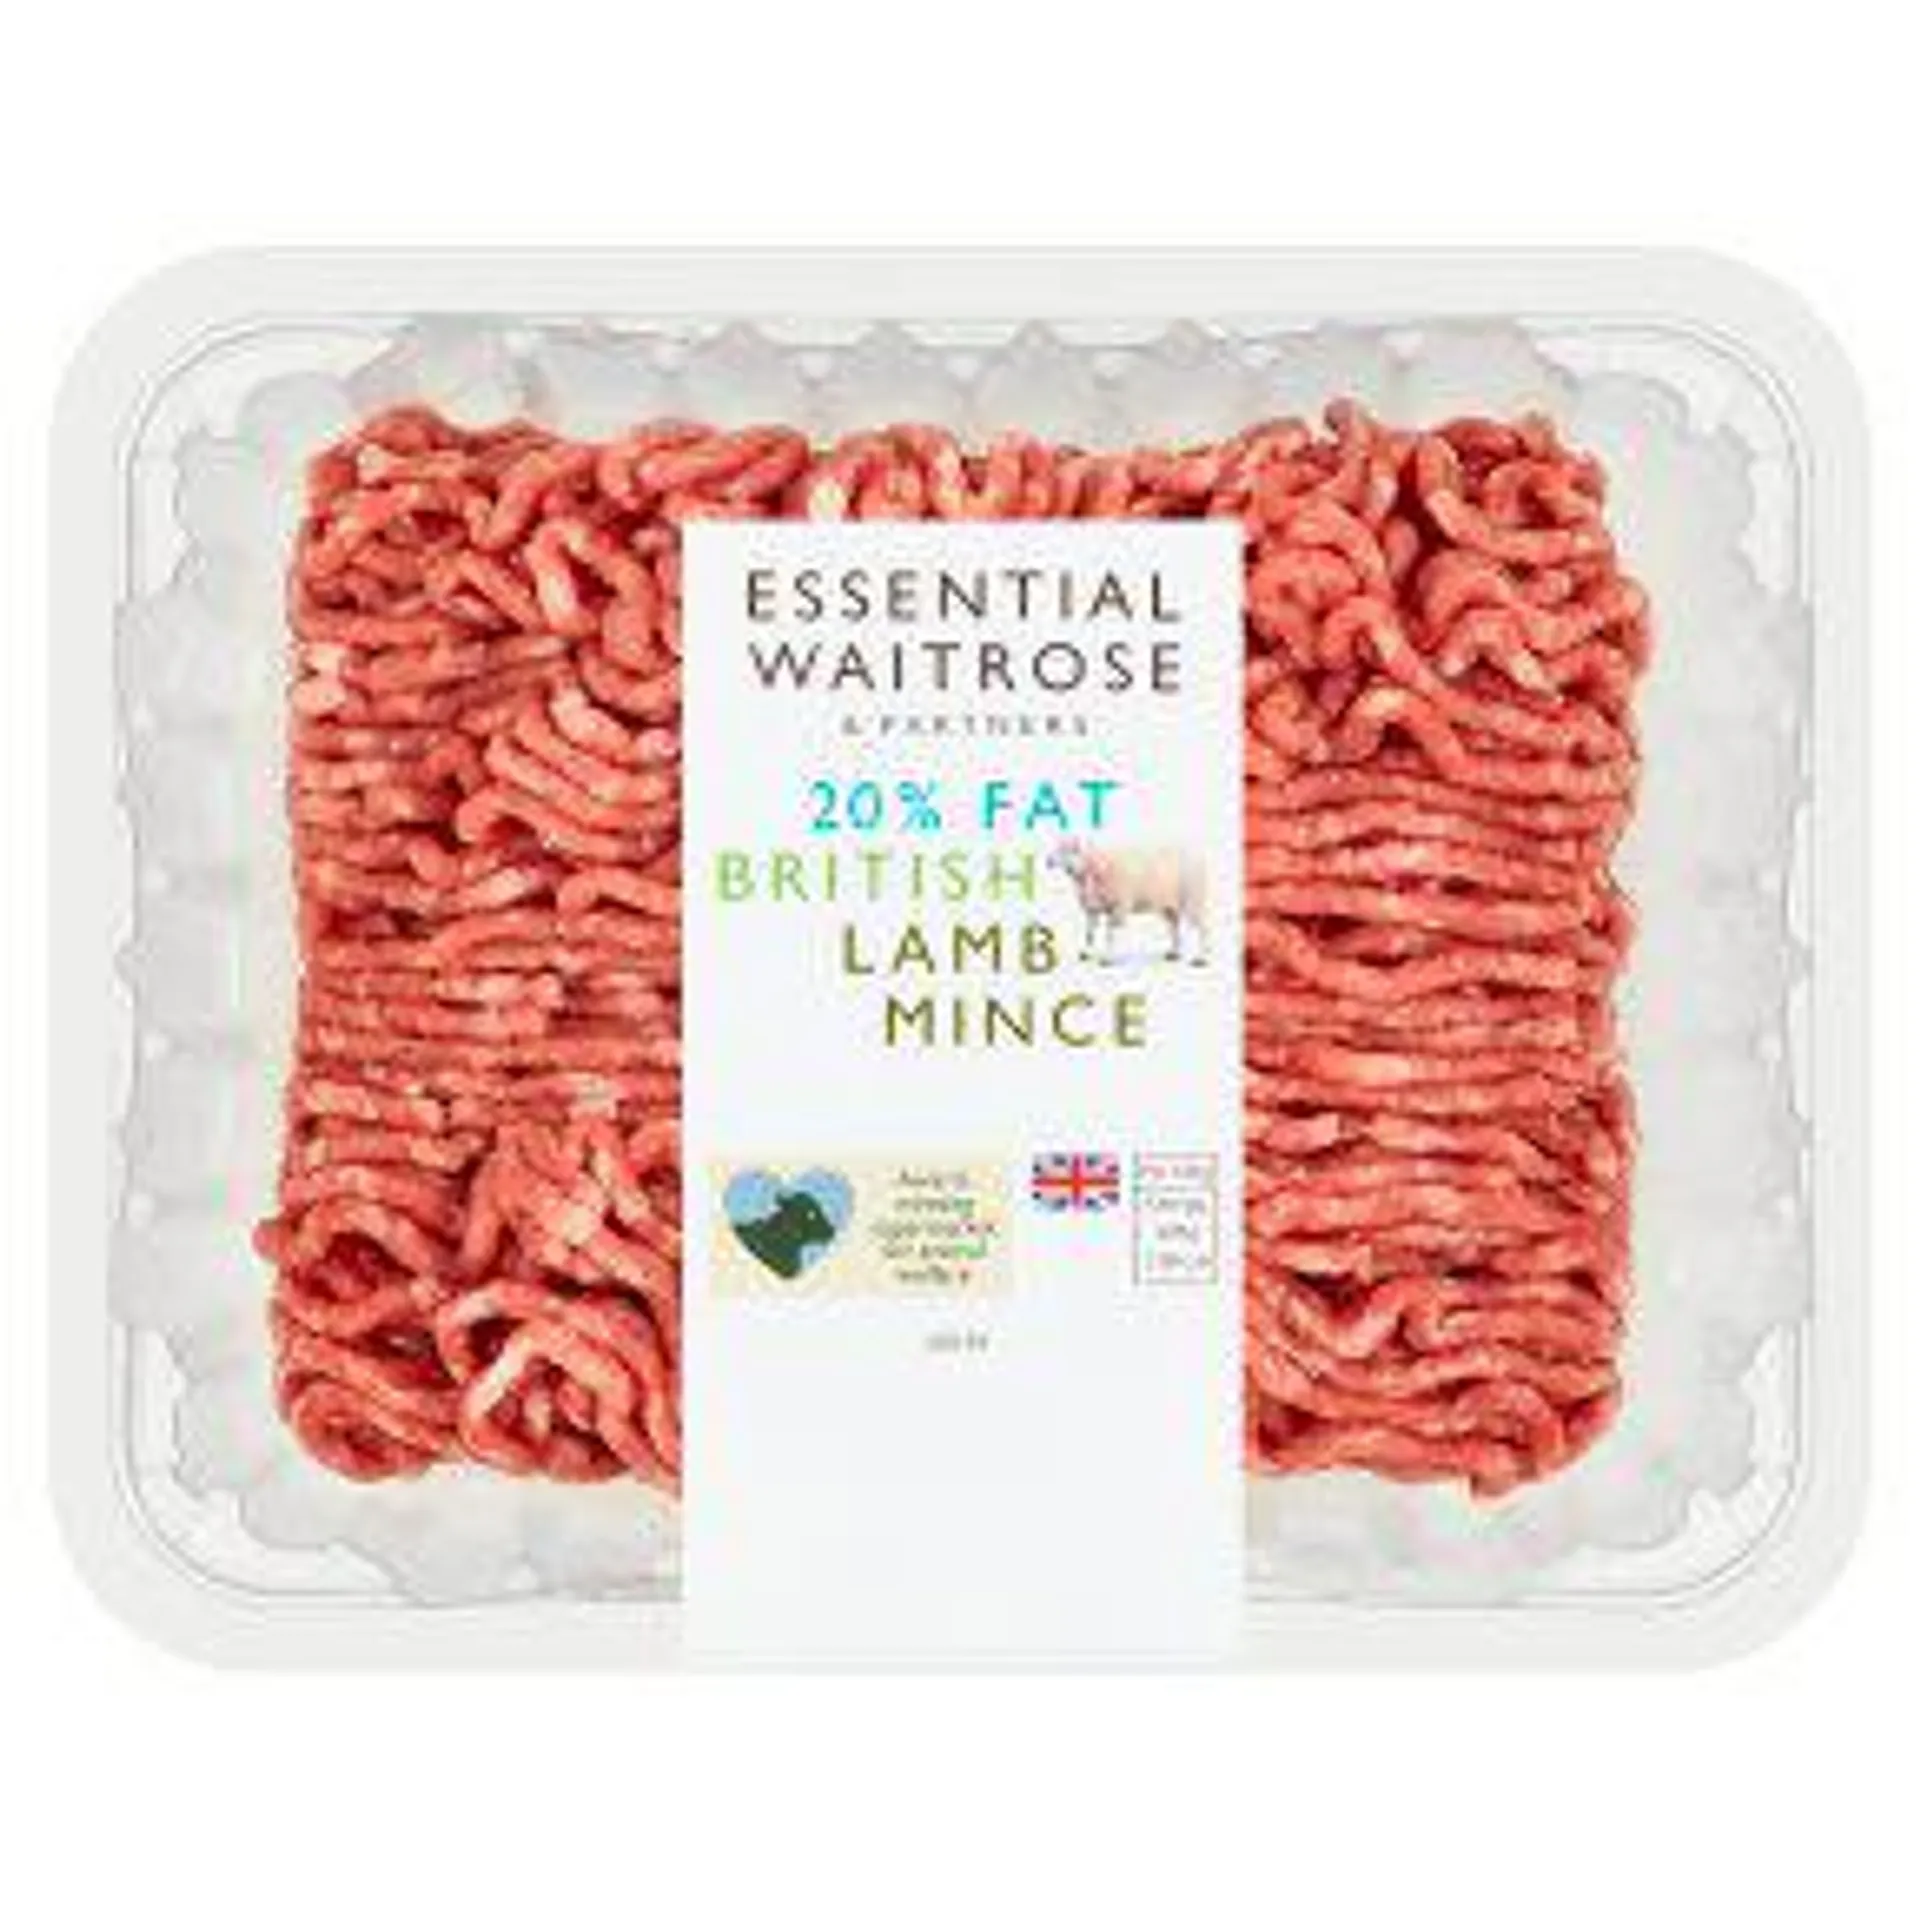 Essential British Lamb Mince 20% Fat